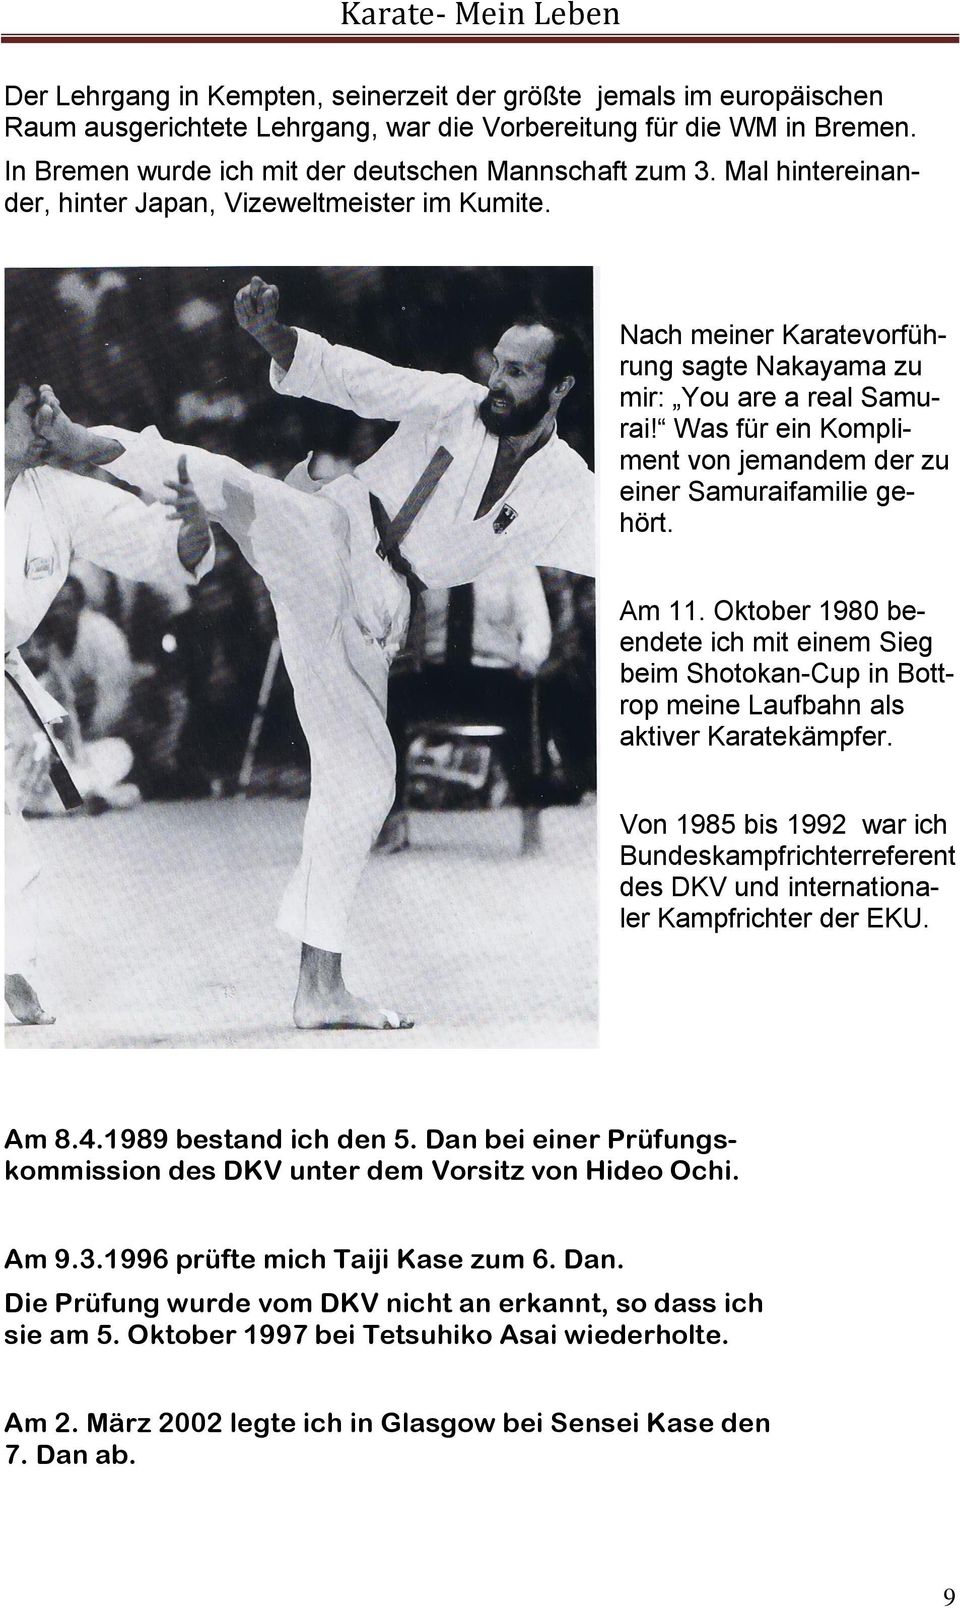 Was für ein Kompliment von jemandem der zu einer Samuraifamilie gehört. Am 11. Oktober 1980 beendete ich mit einem Sieg beim Shotokan-Cup in Bottrop meine Laufbahn als aktiver Karatekämpfer.